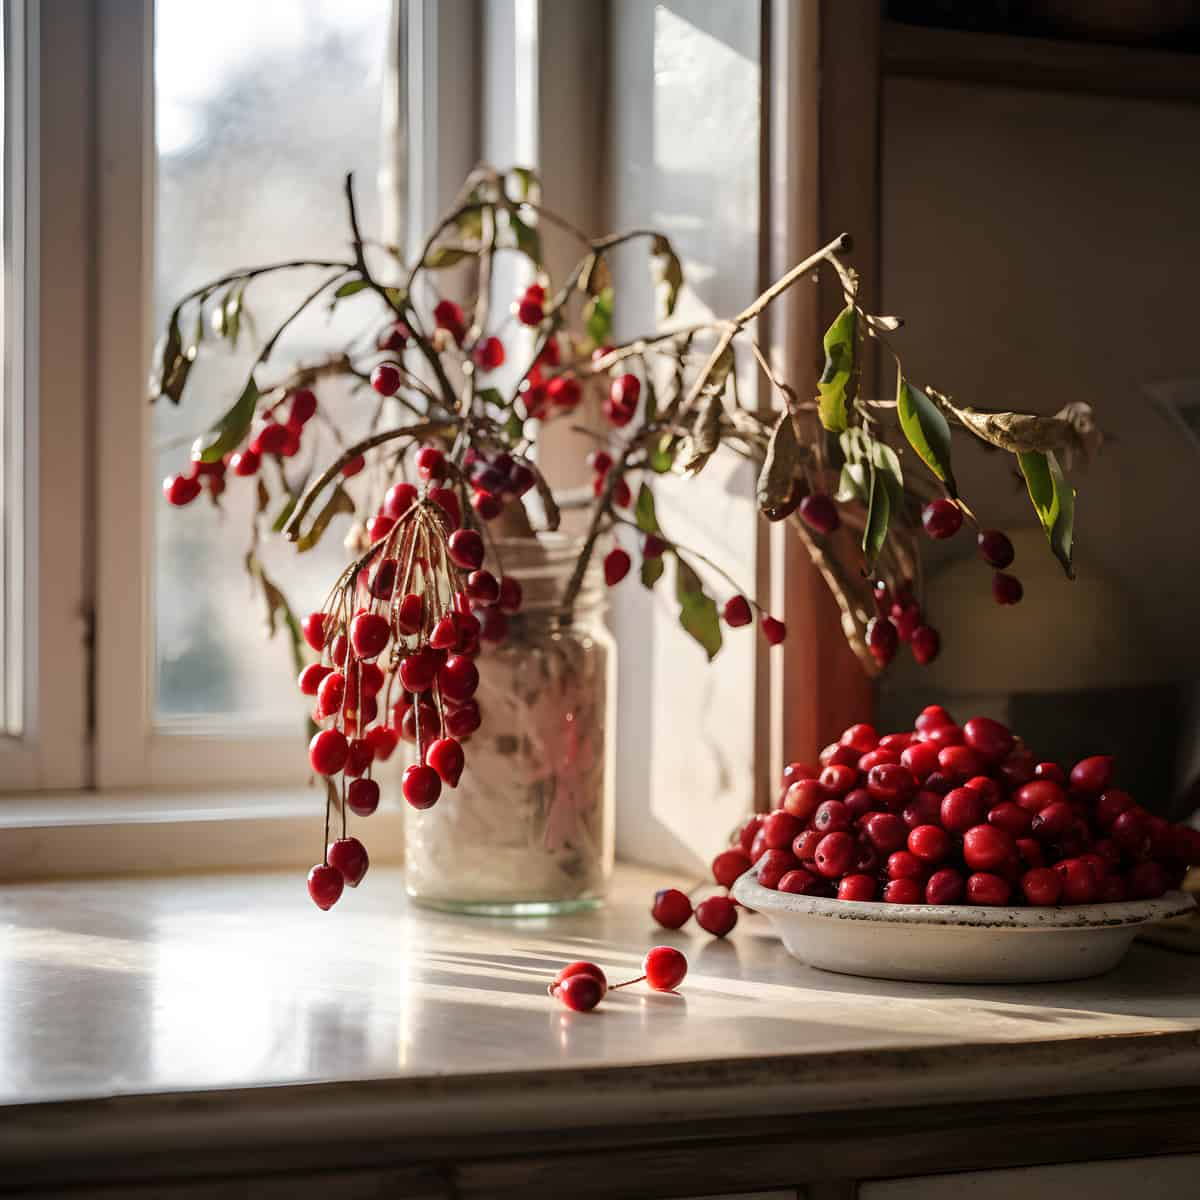 Cherry Elaeagnus on a kitchen counter